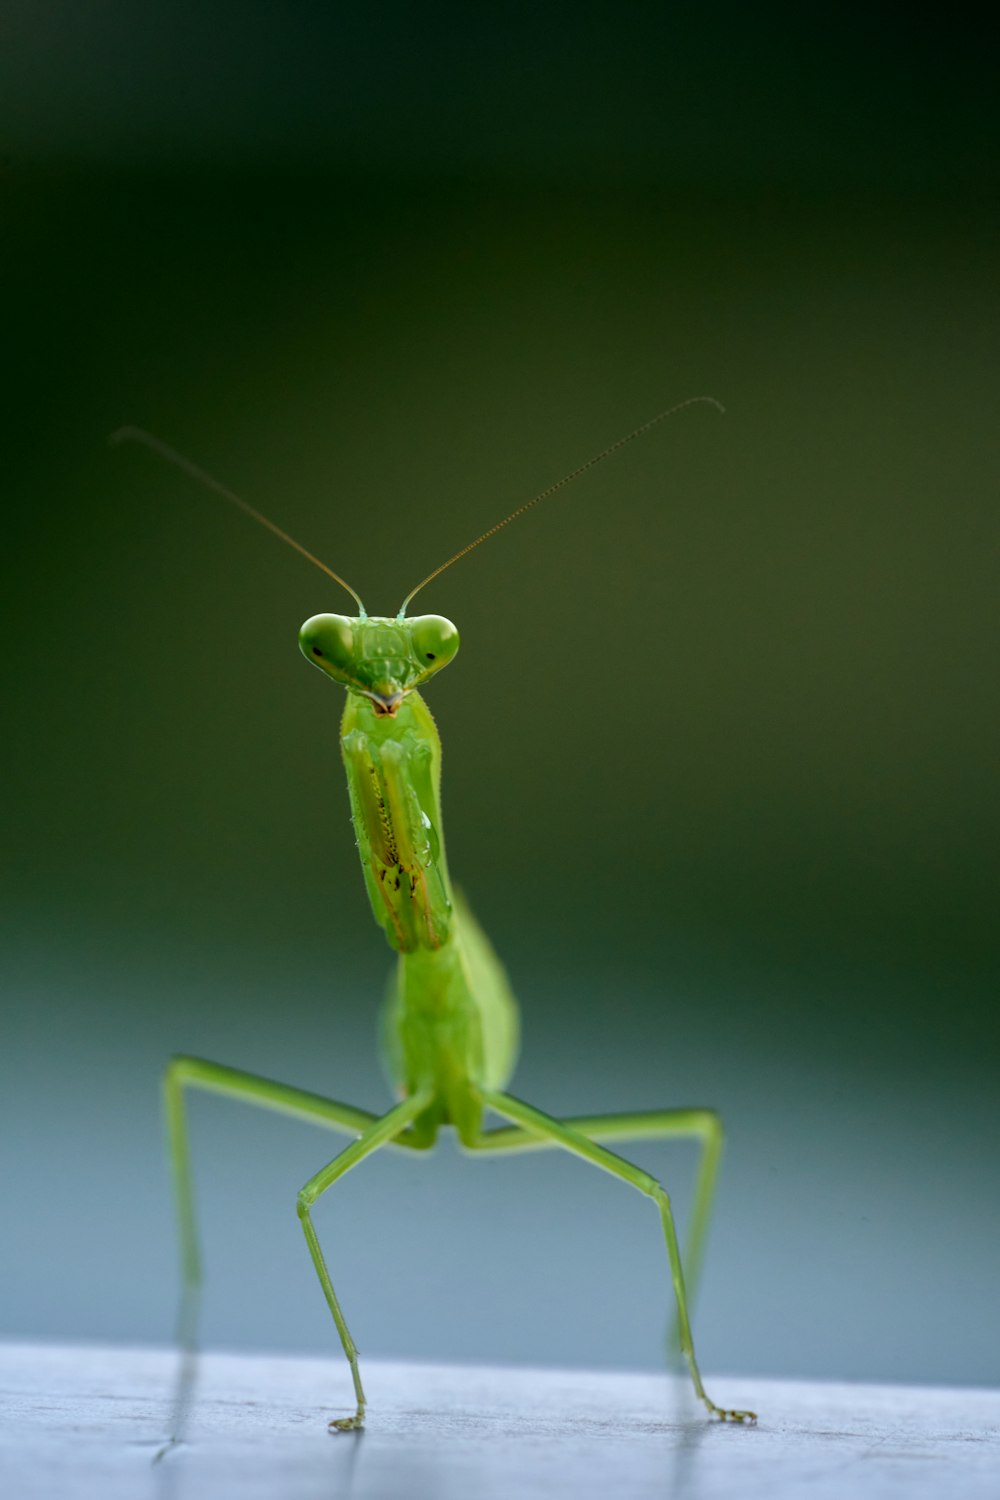 Un insecto verde con antenas largas